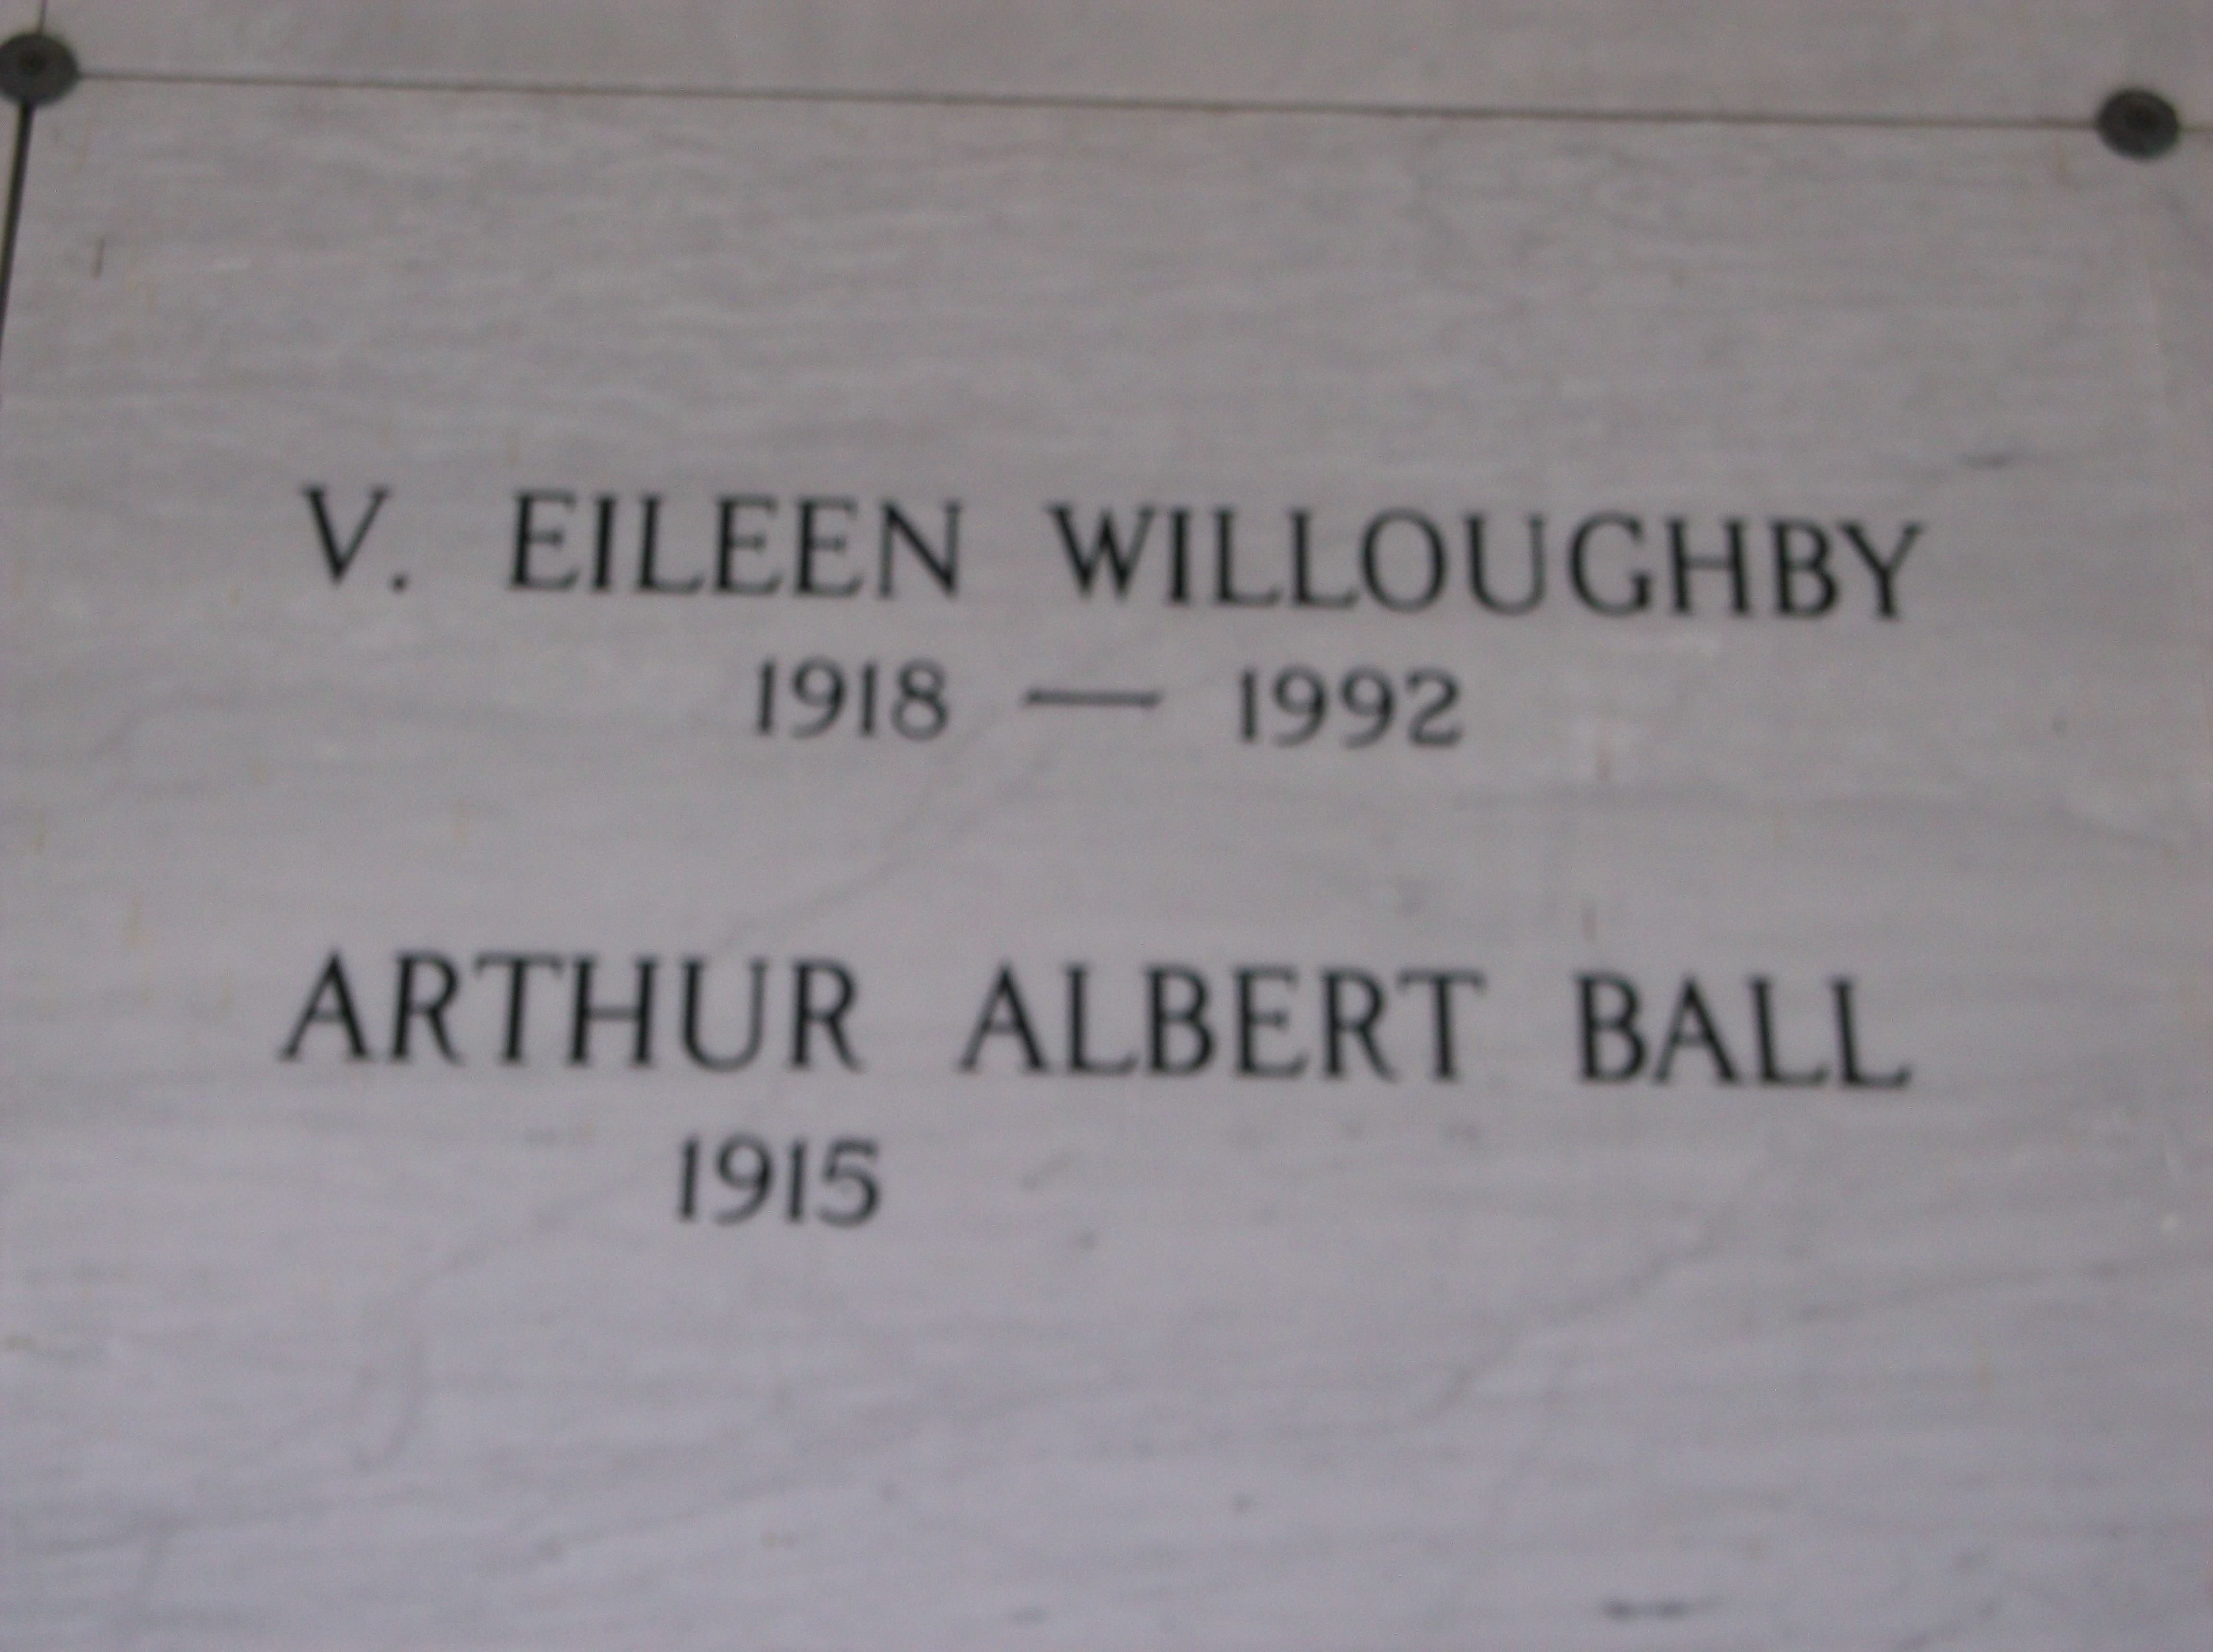 Arthur Albert Ball